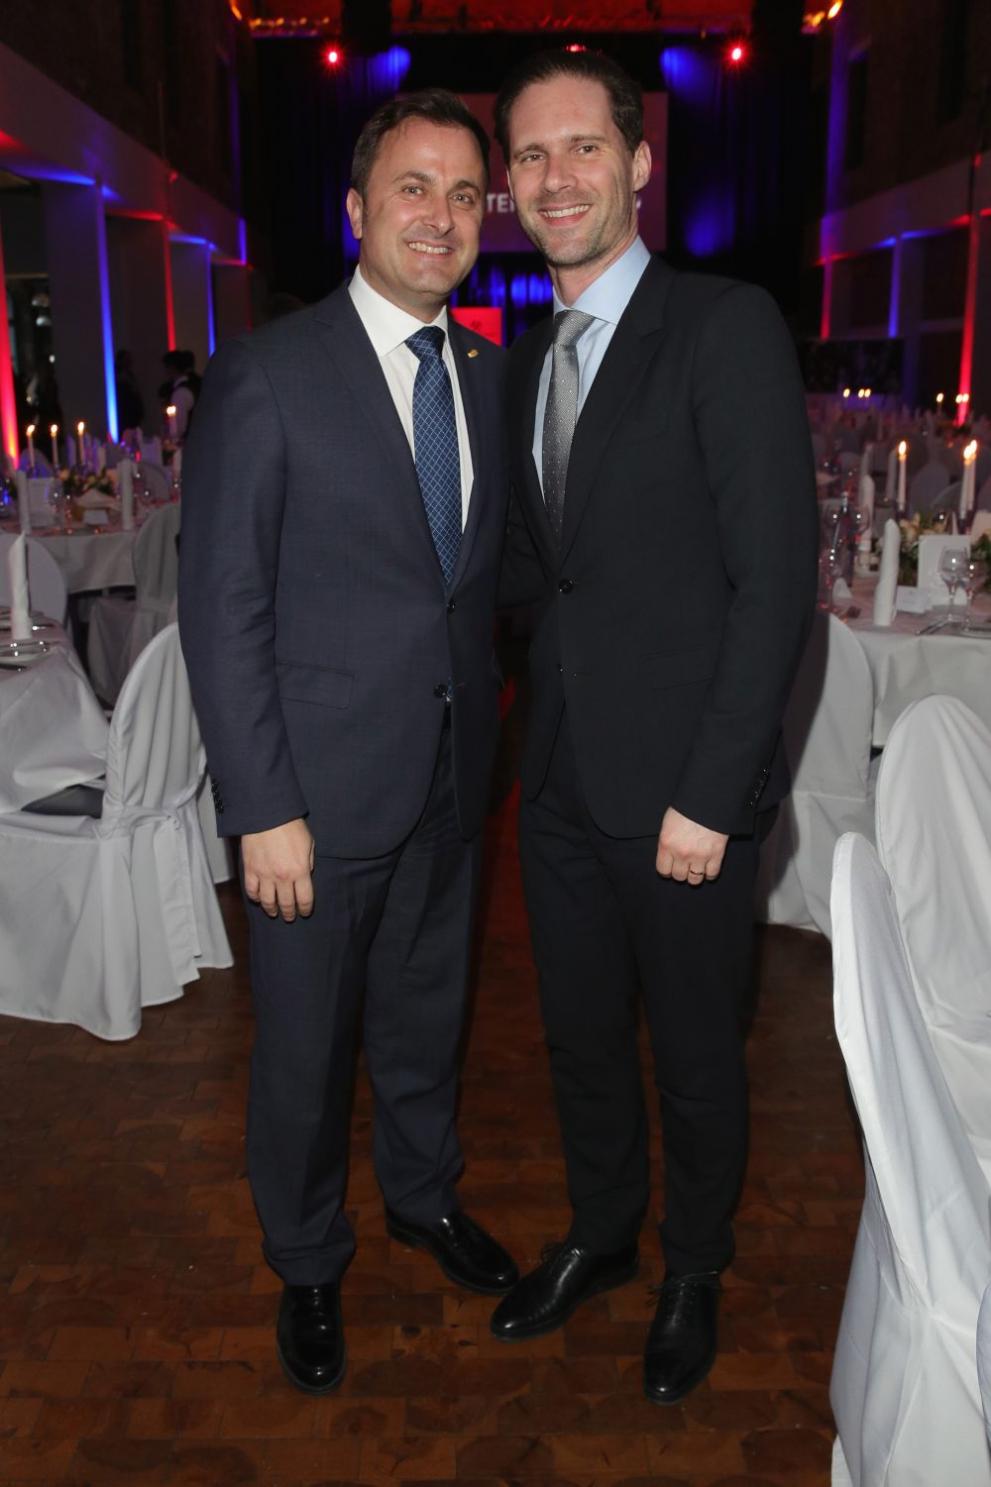  Премиерът на Люксембург и брачният партньор му 